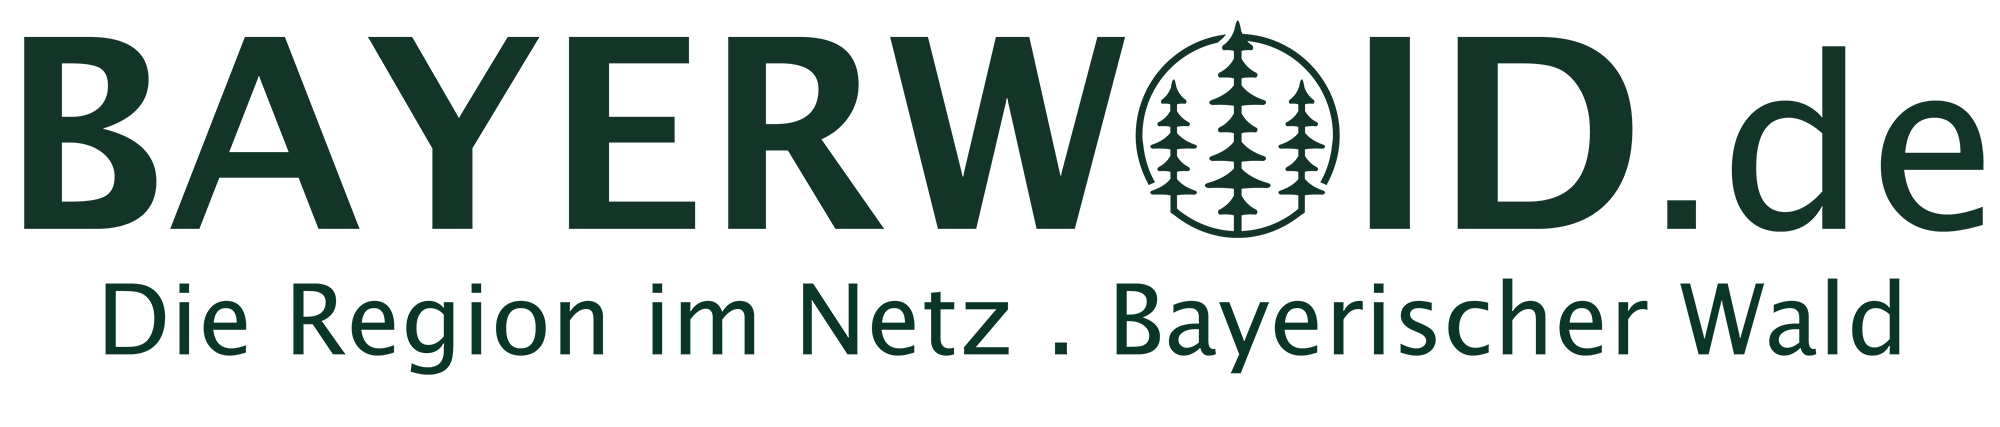 Bayerwoid.de - Die Region im Netz . Bayerischer Wald